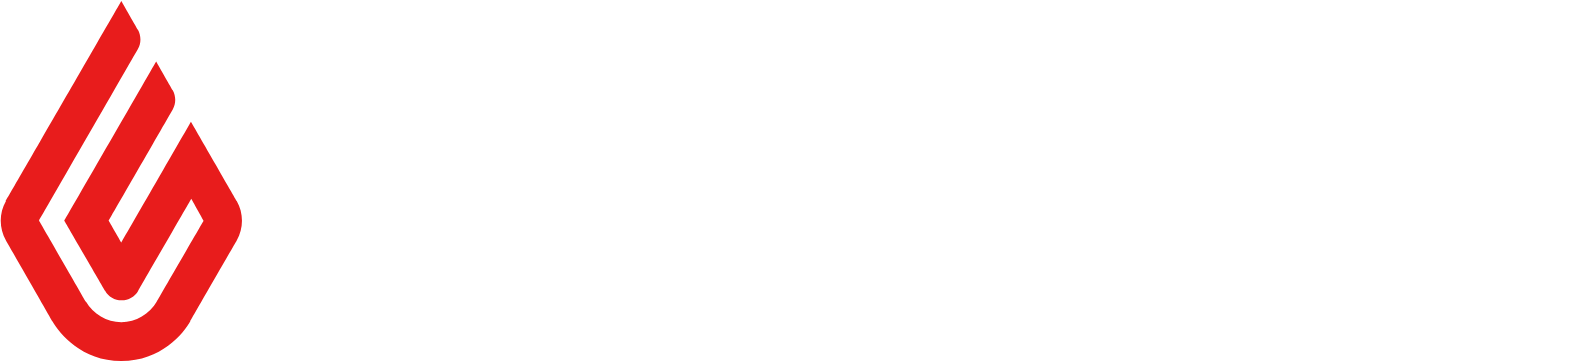 Lightspeed POS logo large for dark backgrounds (transparent PNG)